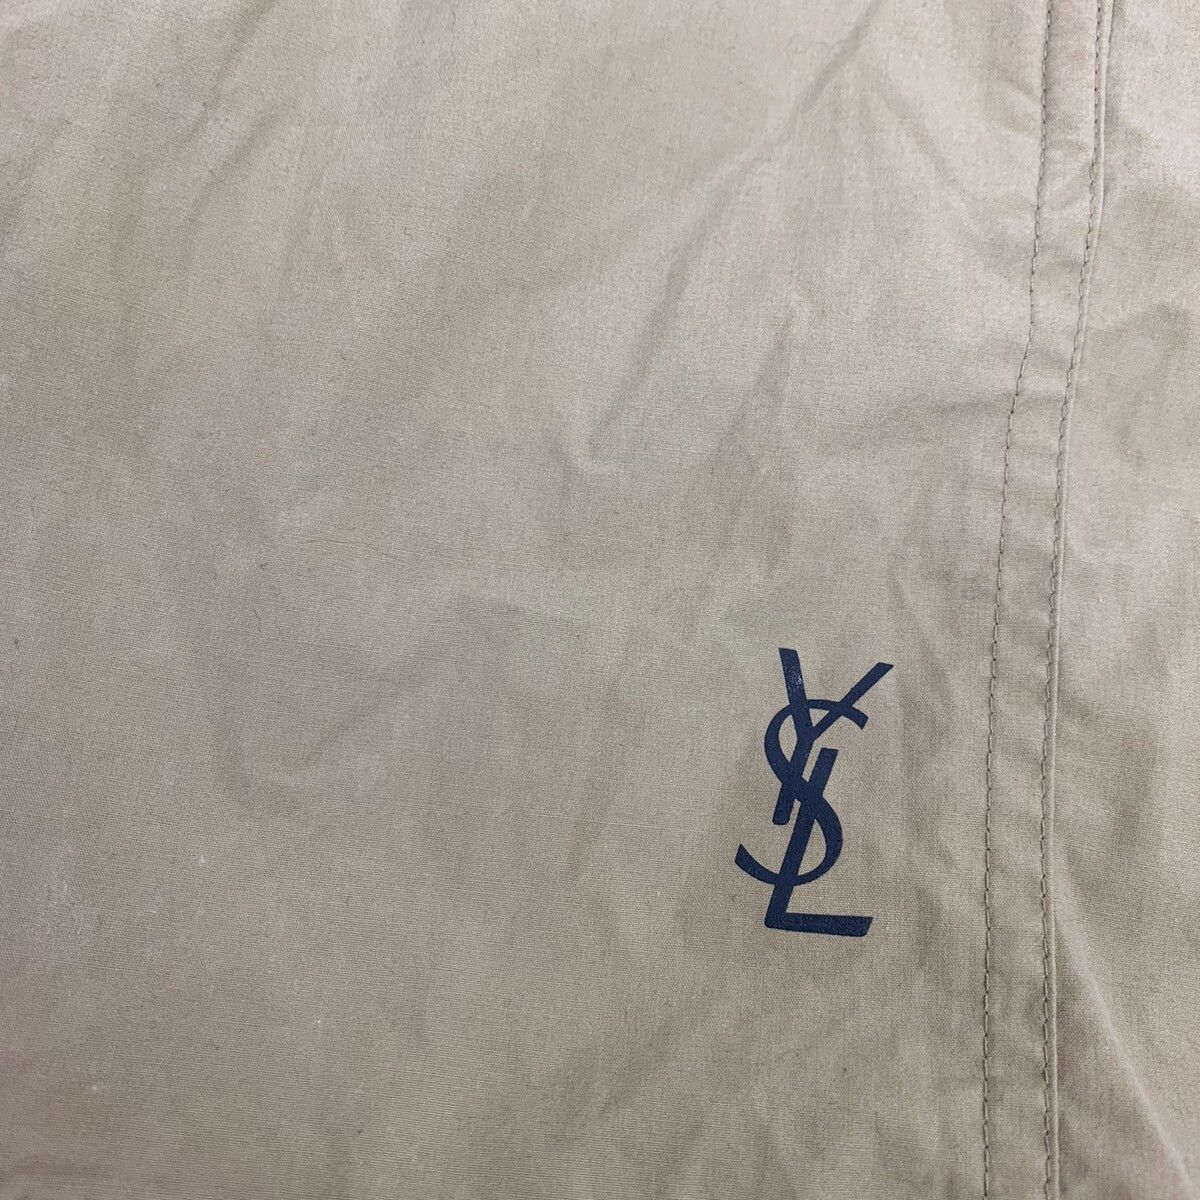 Yves Saint Laurent Vintage Yves Saint Laurent Shorts Size US 34 / EU 50 - 2 Preview